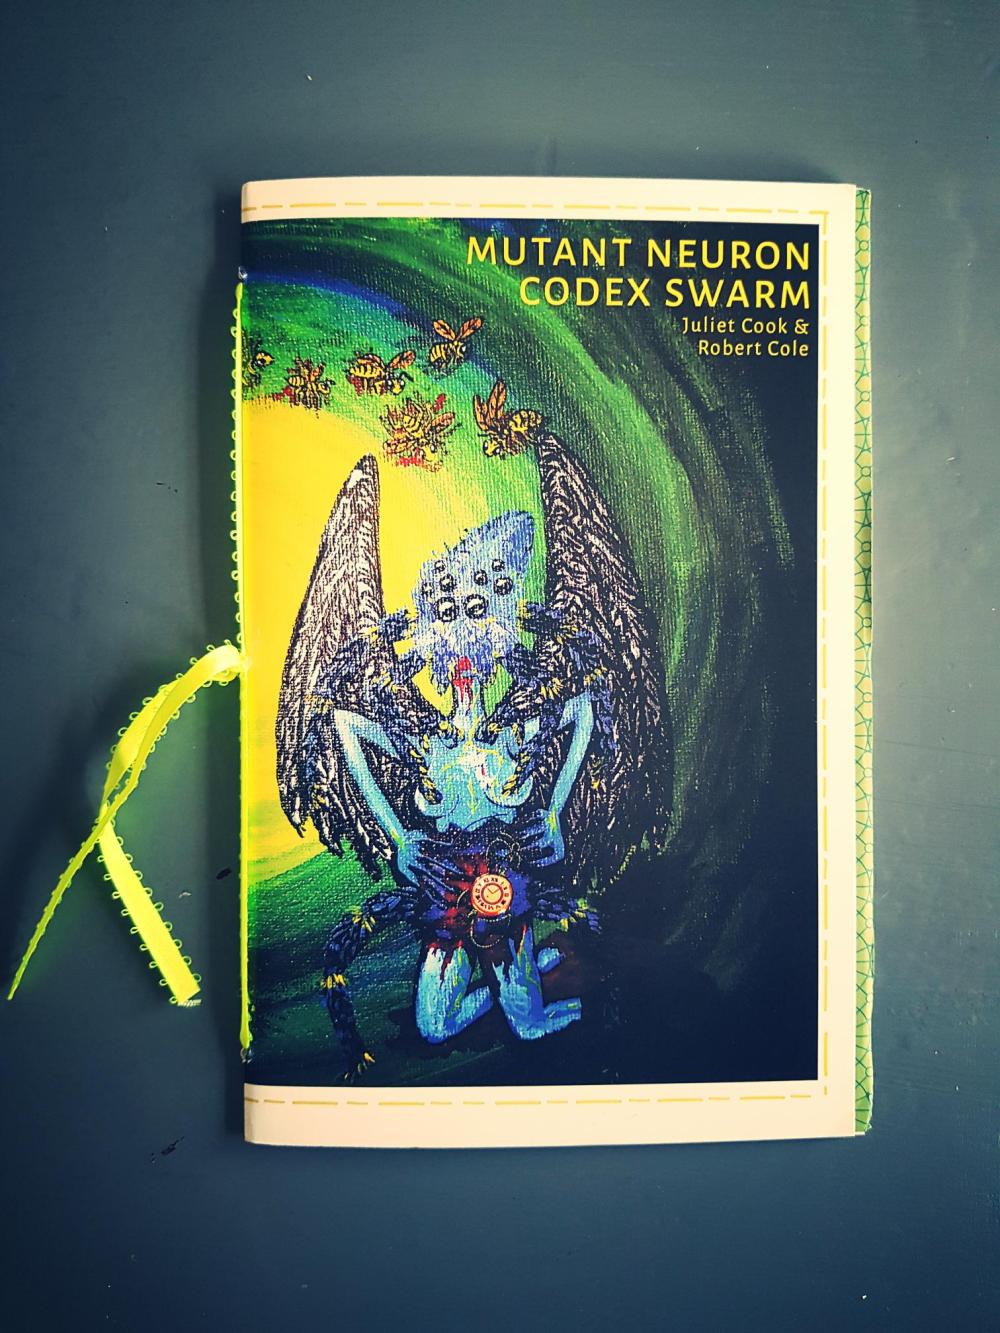 Mutant Neuron Codex Swarm Hyacinth Girl Press